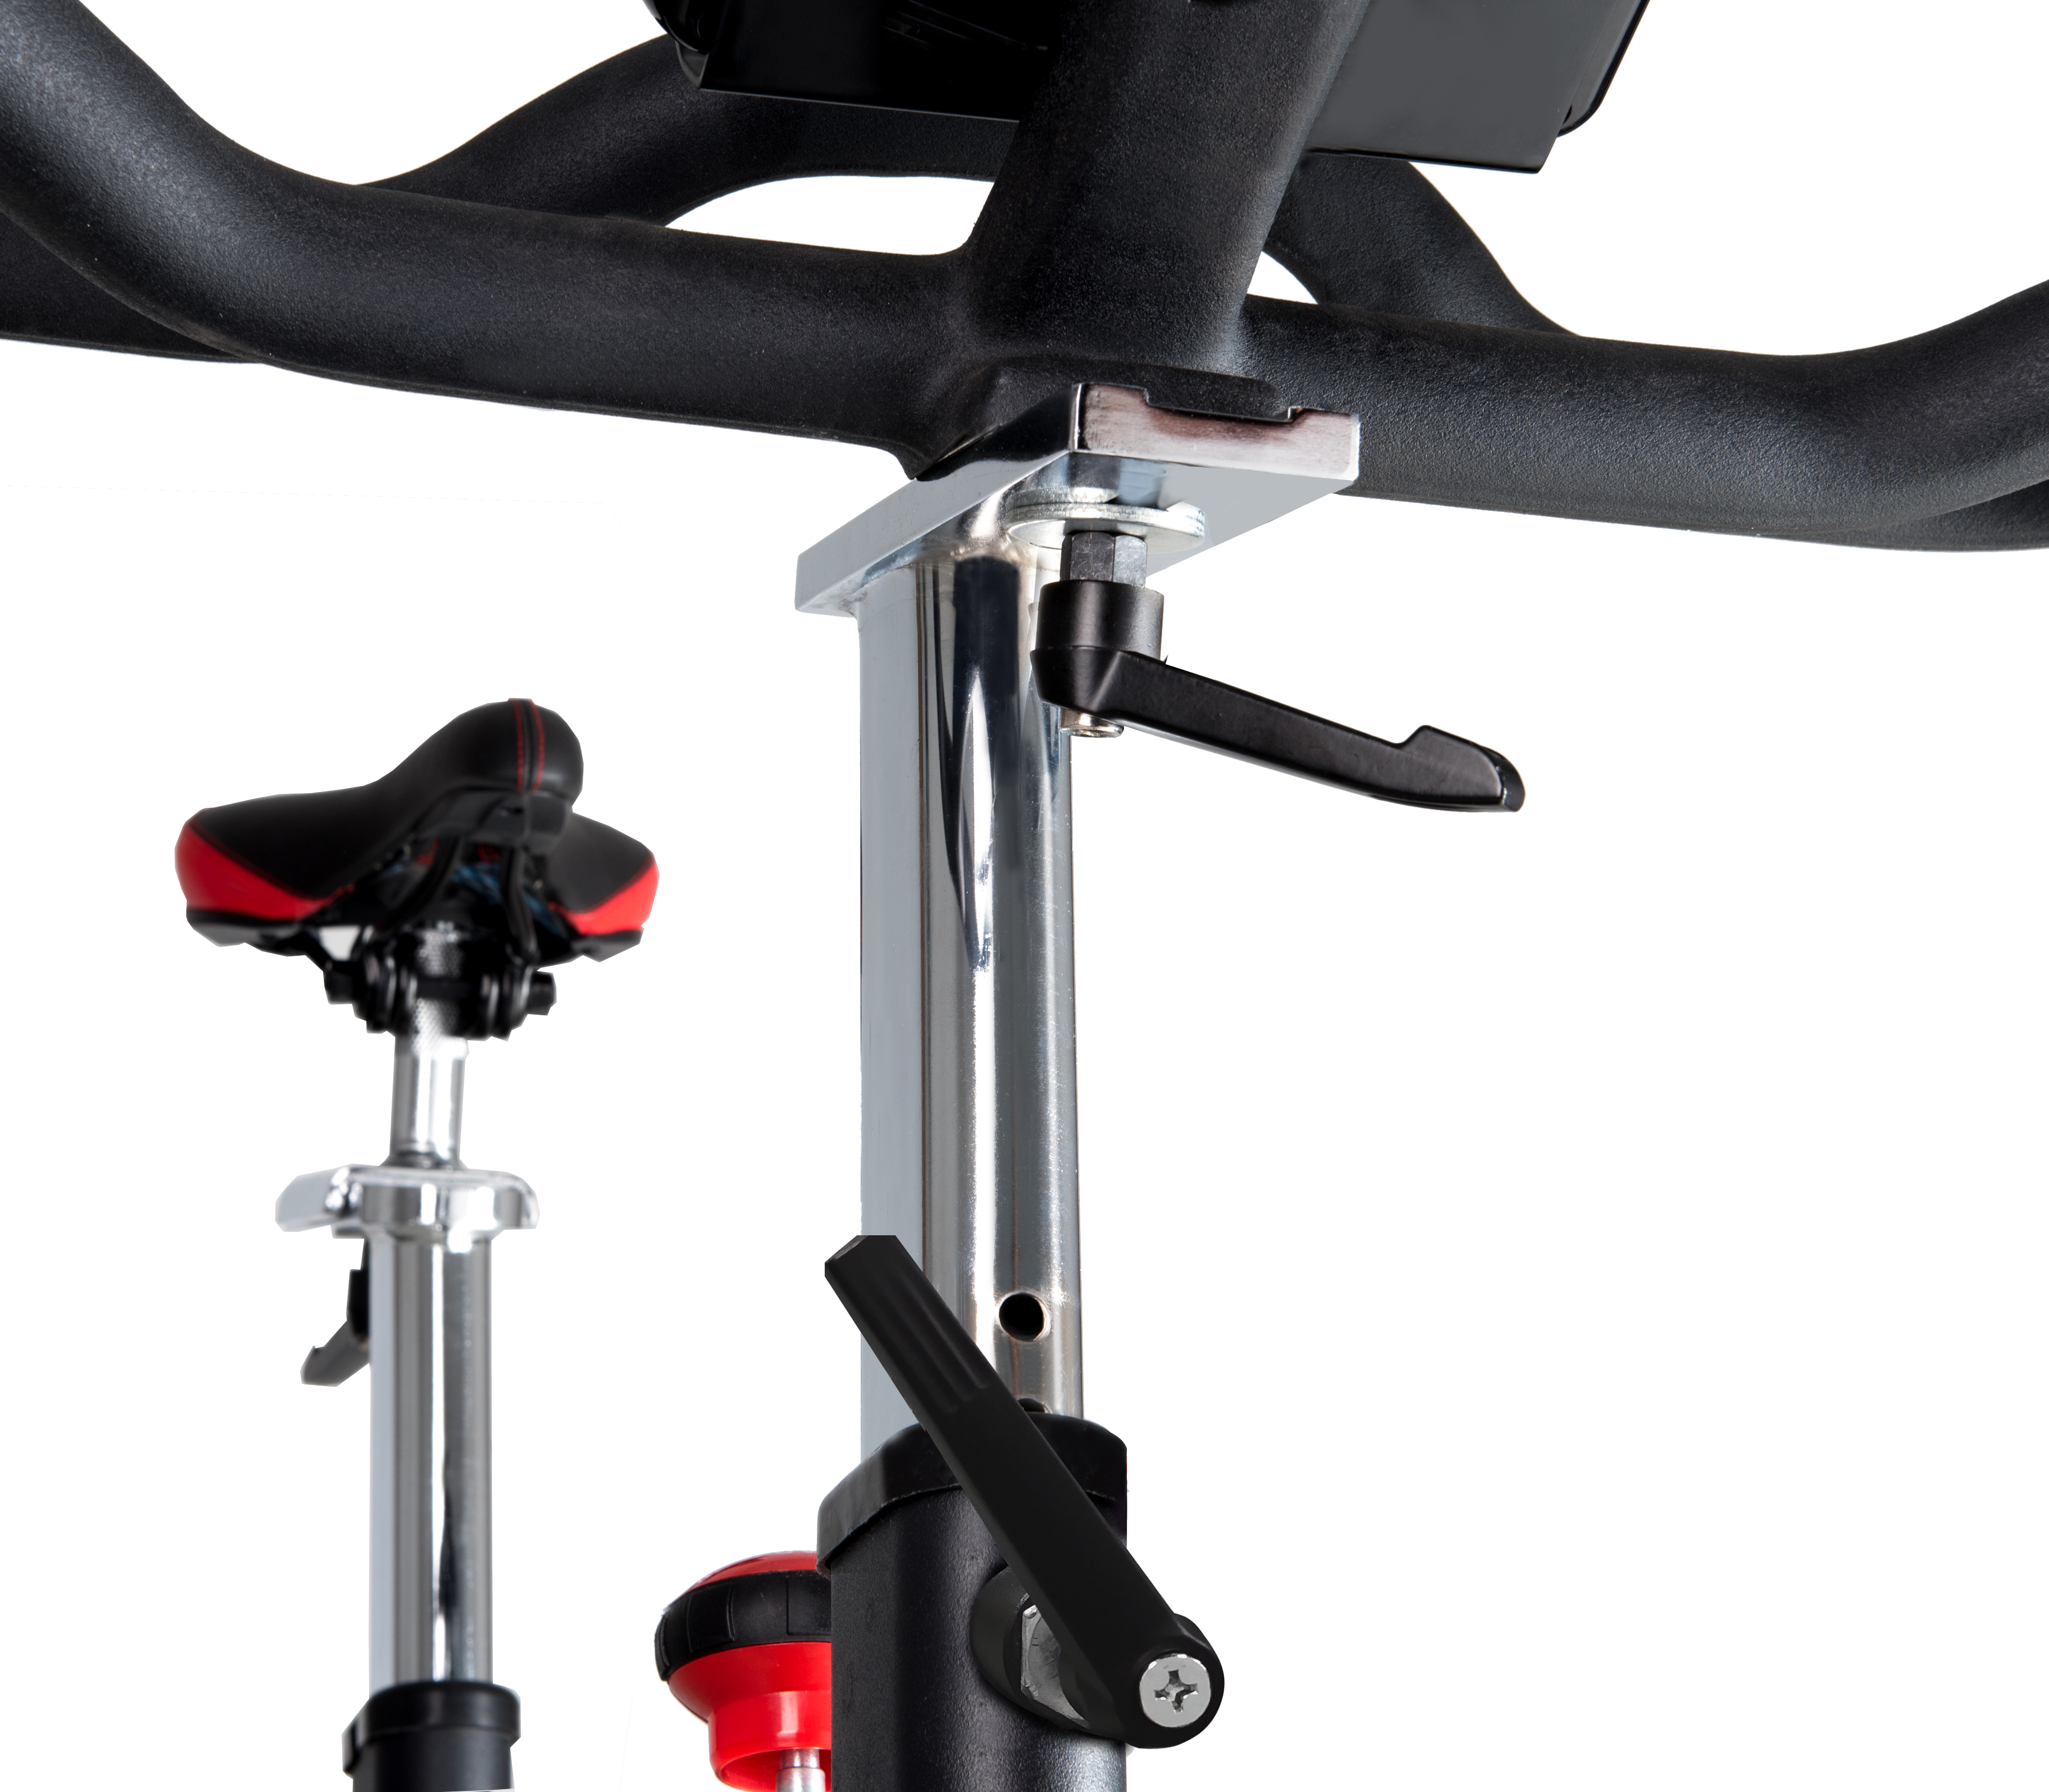 Bicicleta indor magnetica con conectividad Toorx SRX-500